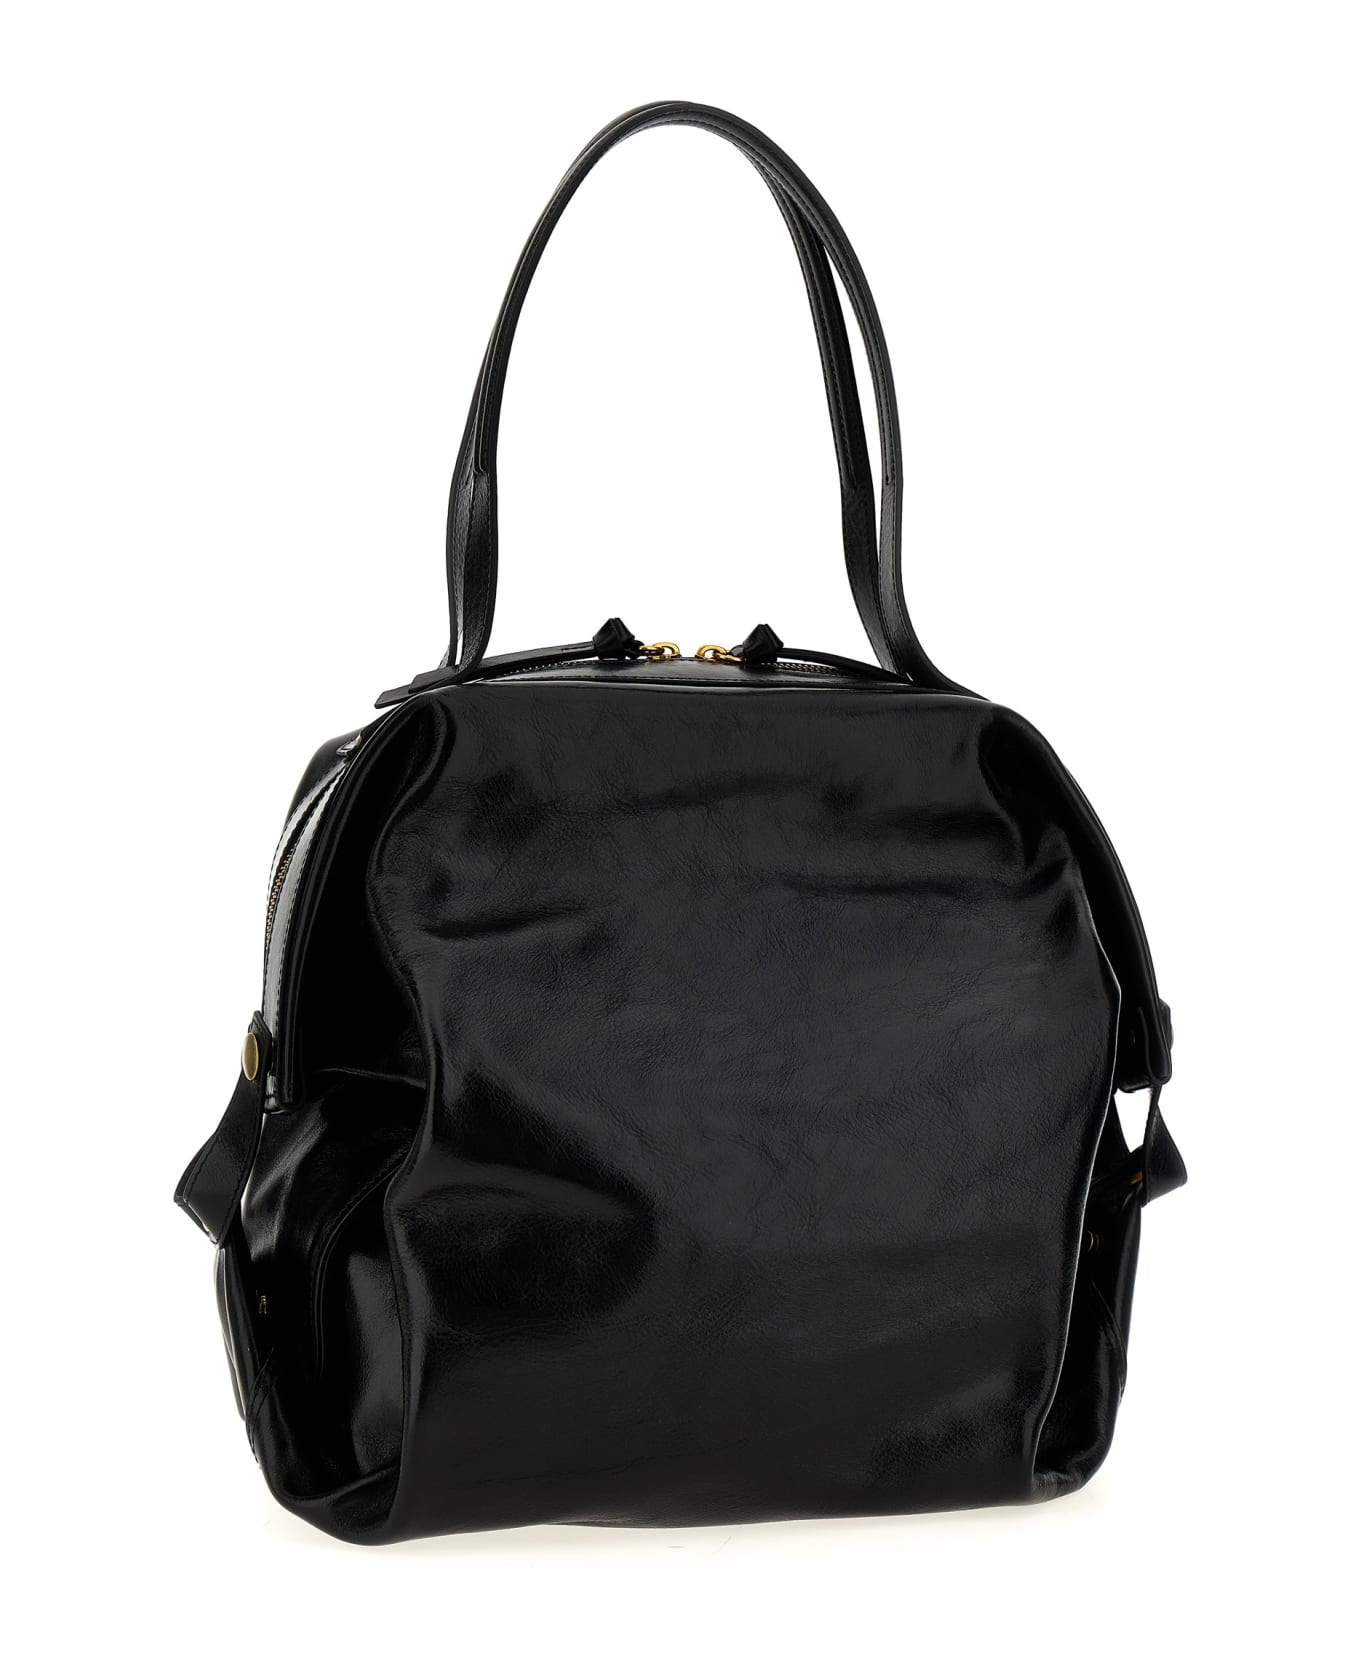 Vivienne Westwood 'mara Holdall' Handbag - Black  